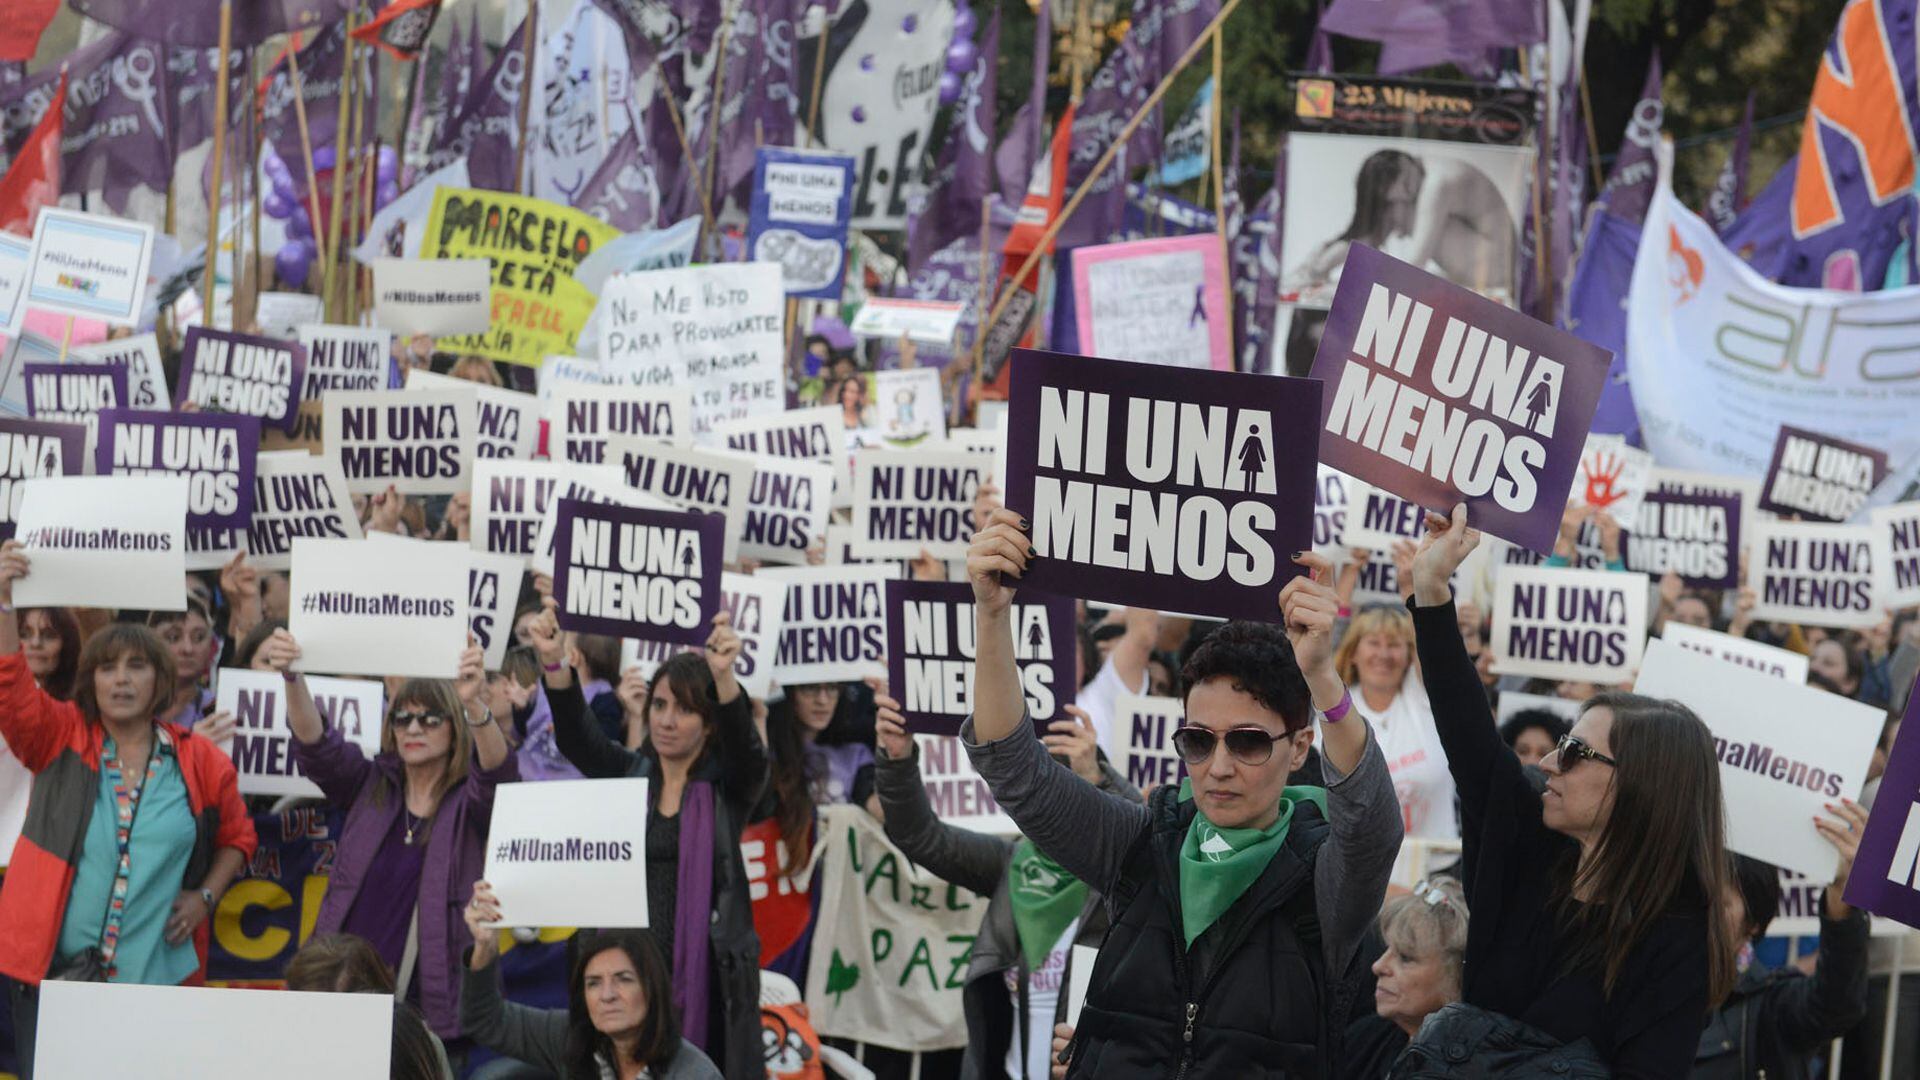 "Ni una menos" es una consigna que dio nombre a un movimiento feminista surgido en Argentina en 2015, que posteriormente se expandiría a gran escala hacia varios países de Hispanoamérica y otras regiones del mundo (Fernando Calzada)